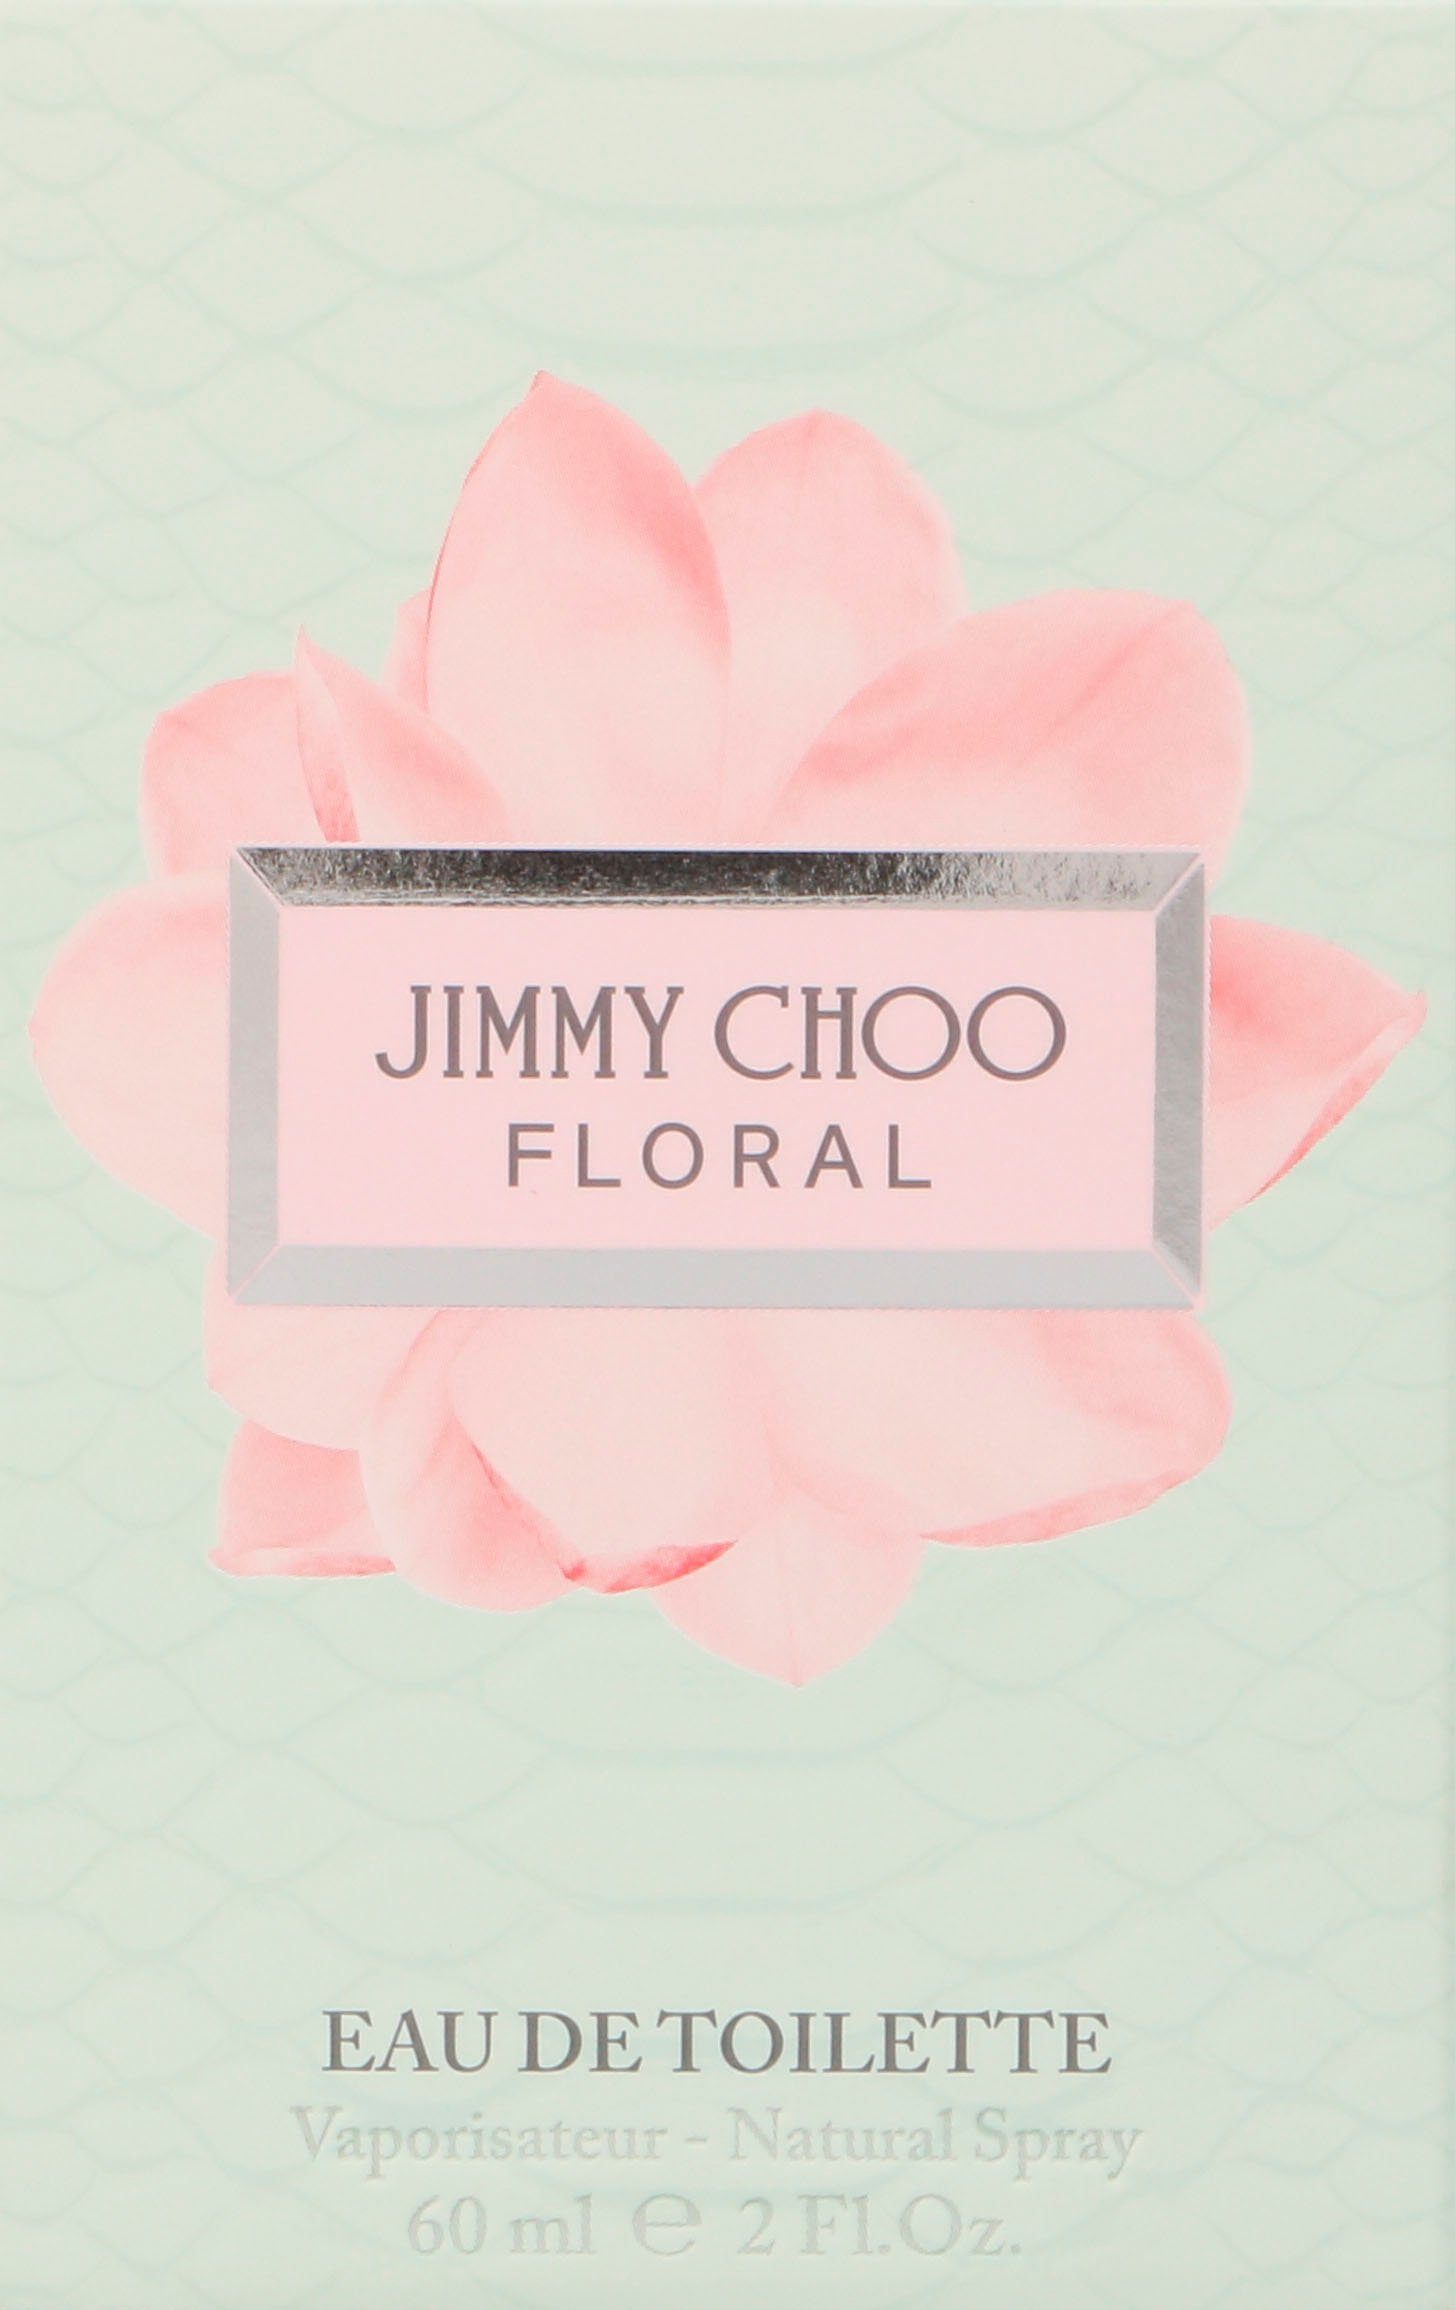 JIMMY CHOO Eau Toilette Floral de